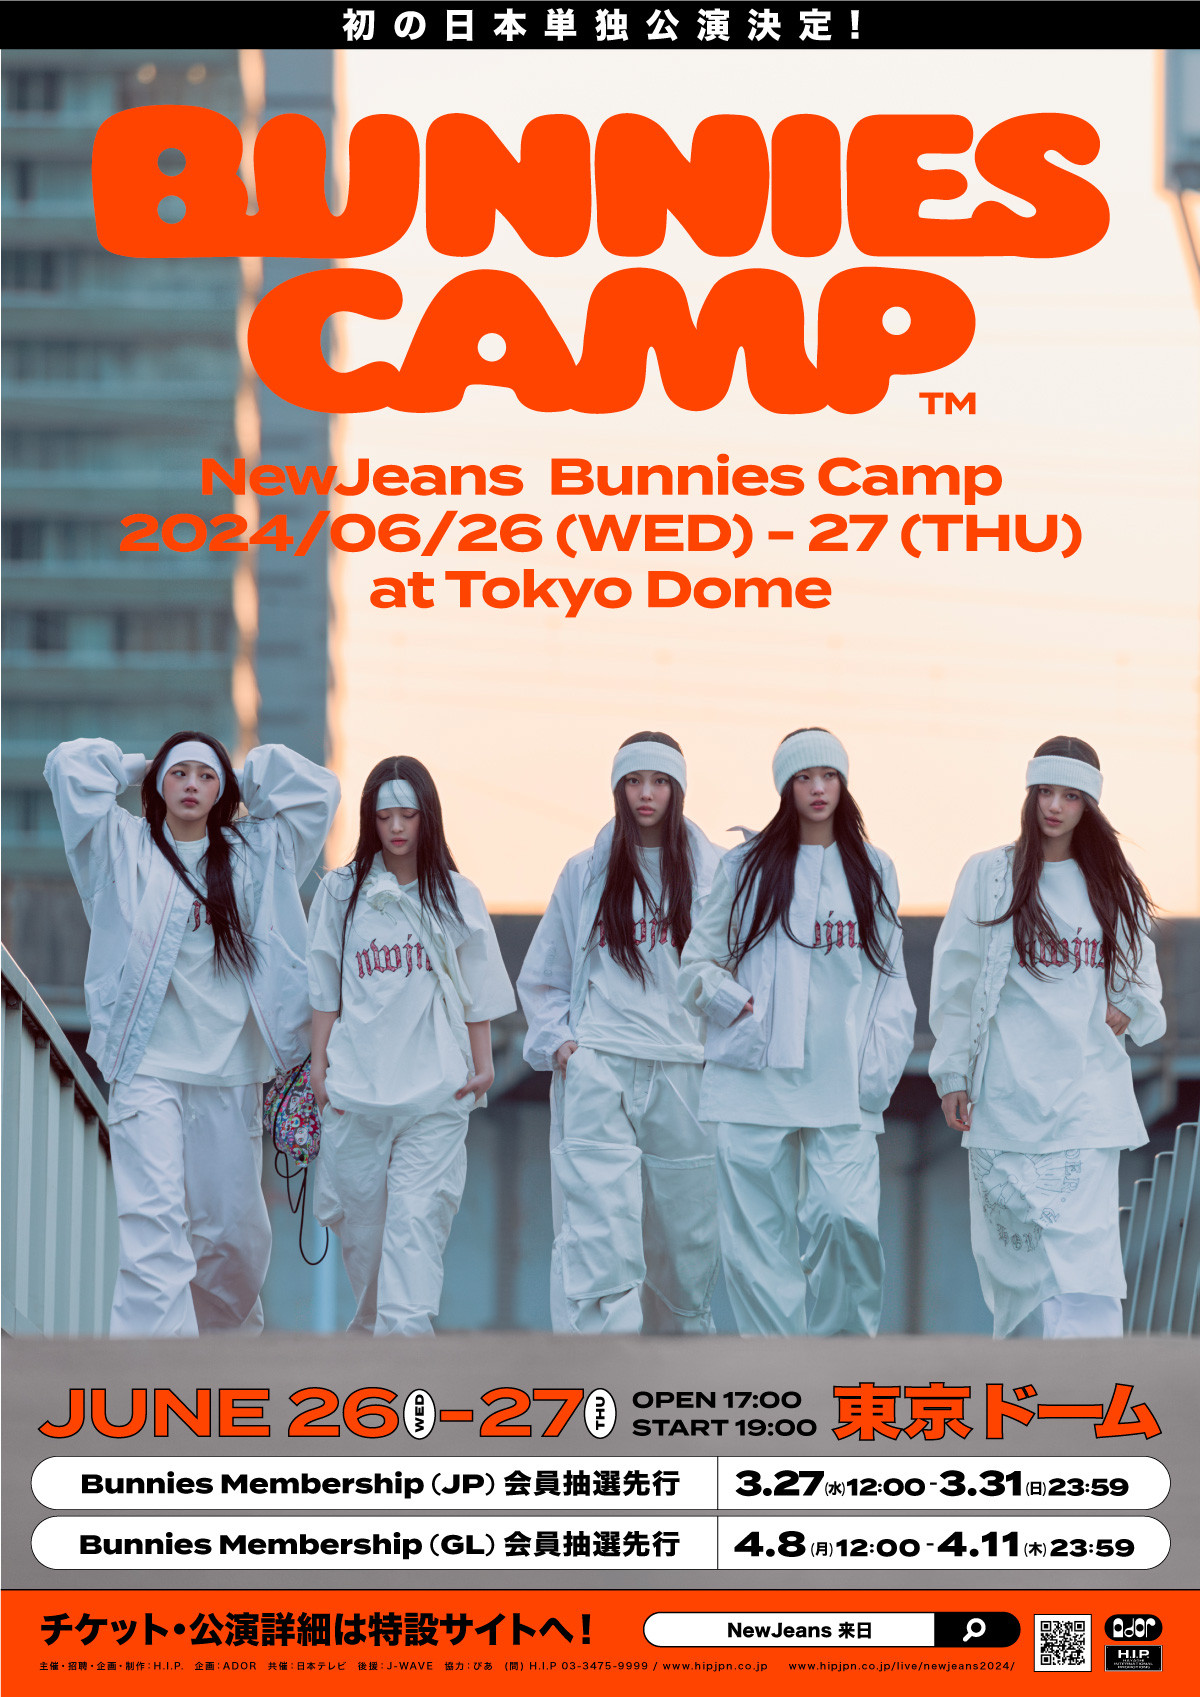 画像・写真 | NewJeans、初の単独日本公演はいきなり東京ドーム 海外歌手史上最速で 7枚目 | ORICON NEWS